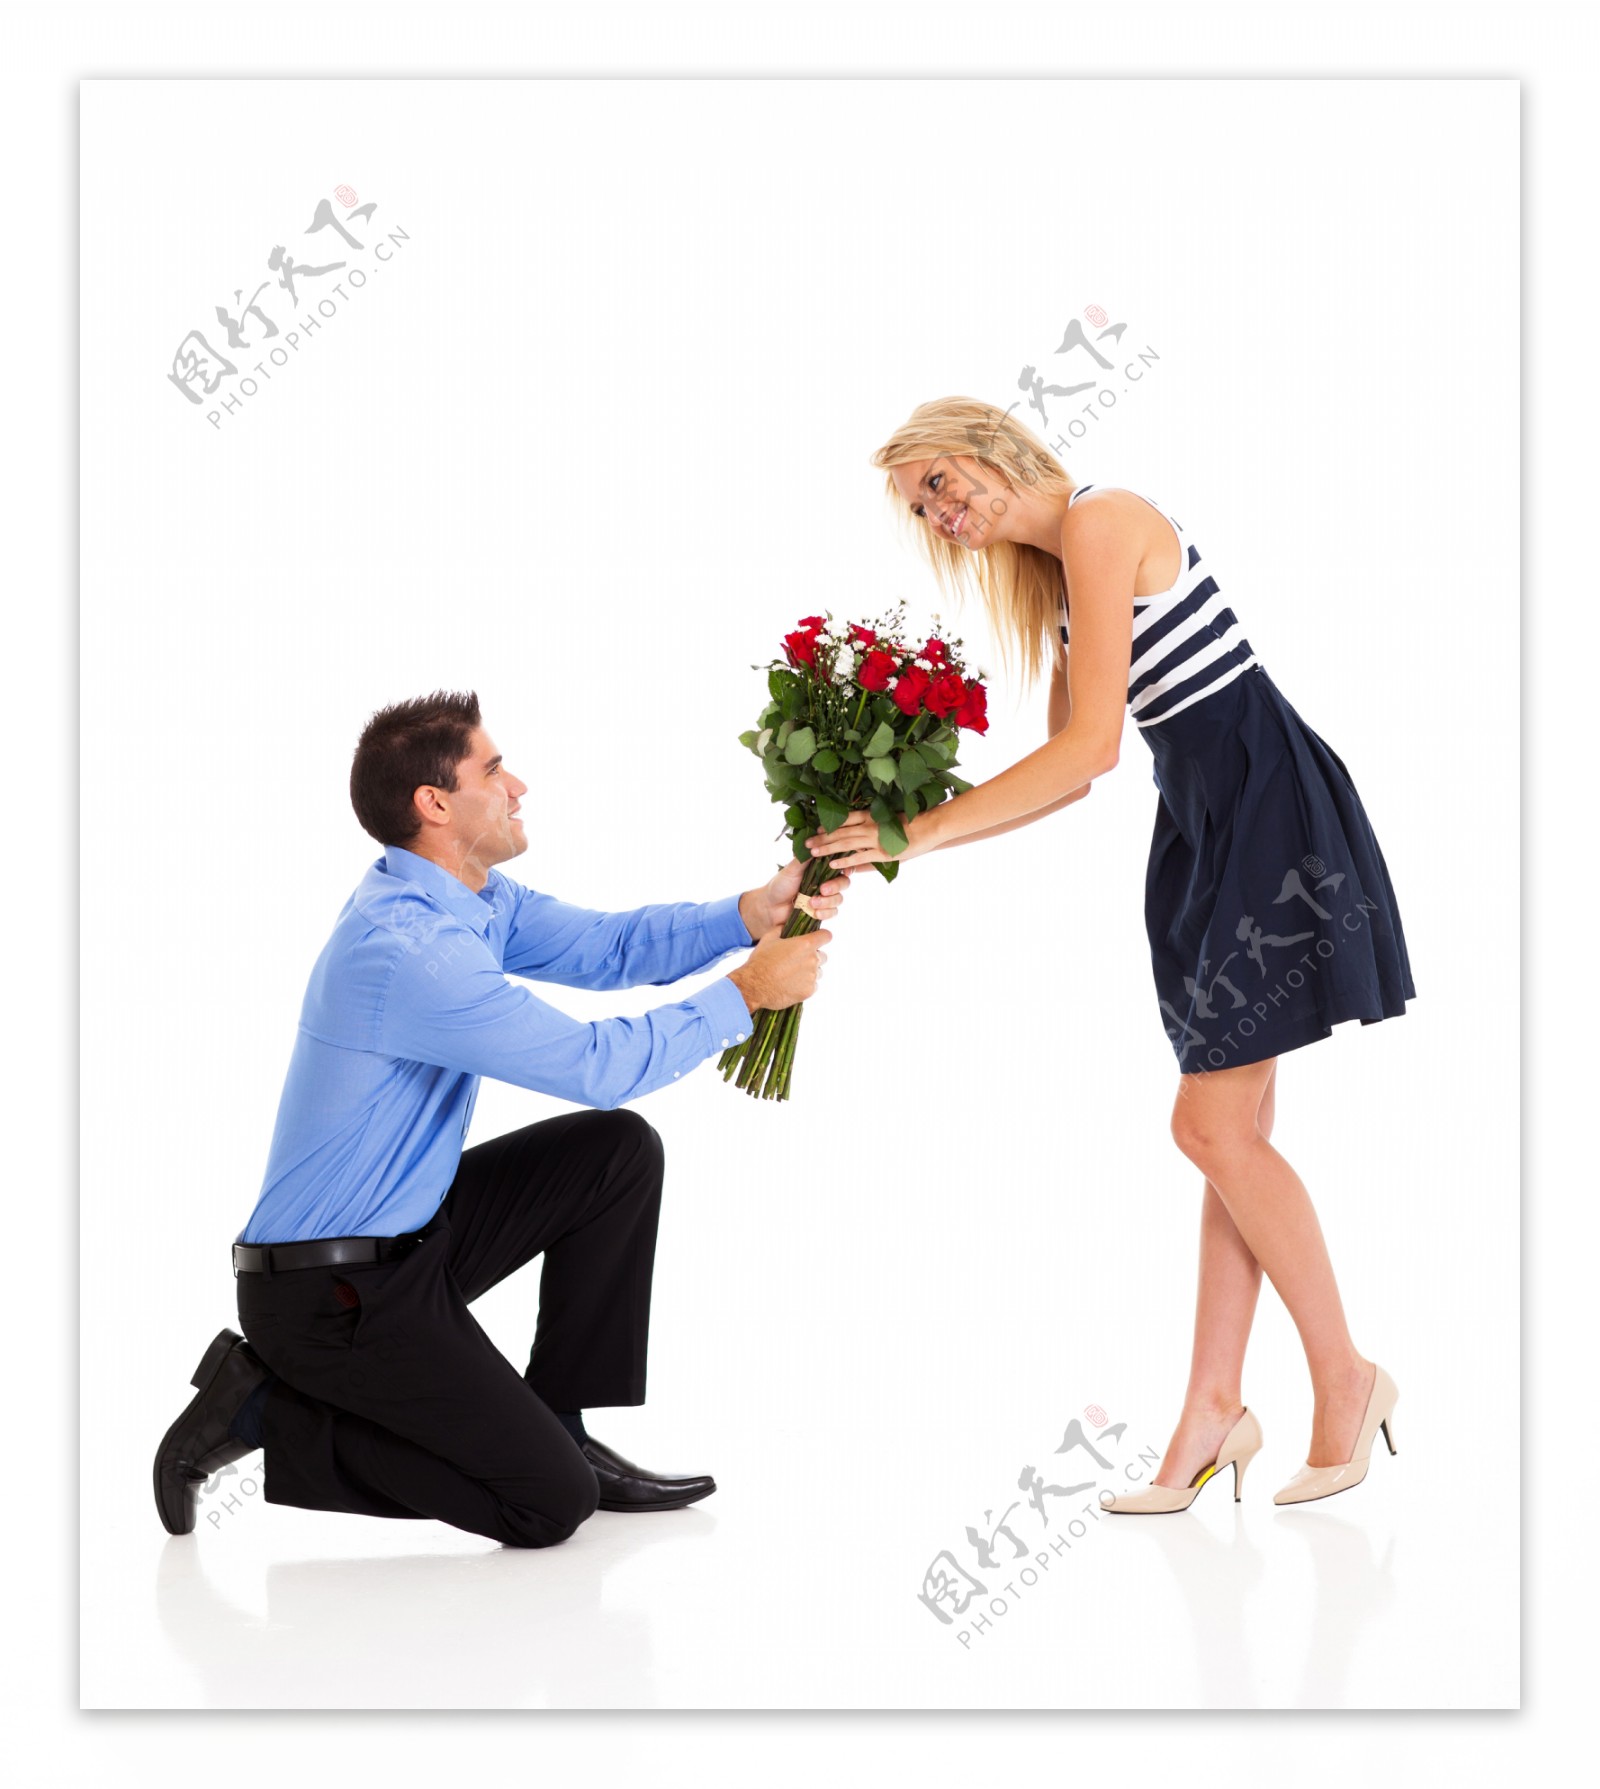 献花给美女的男人图片